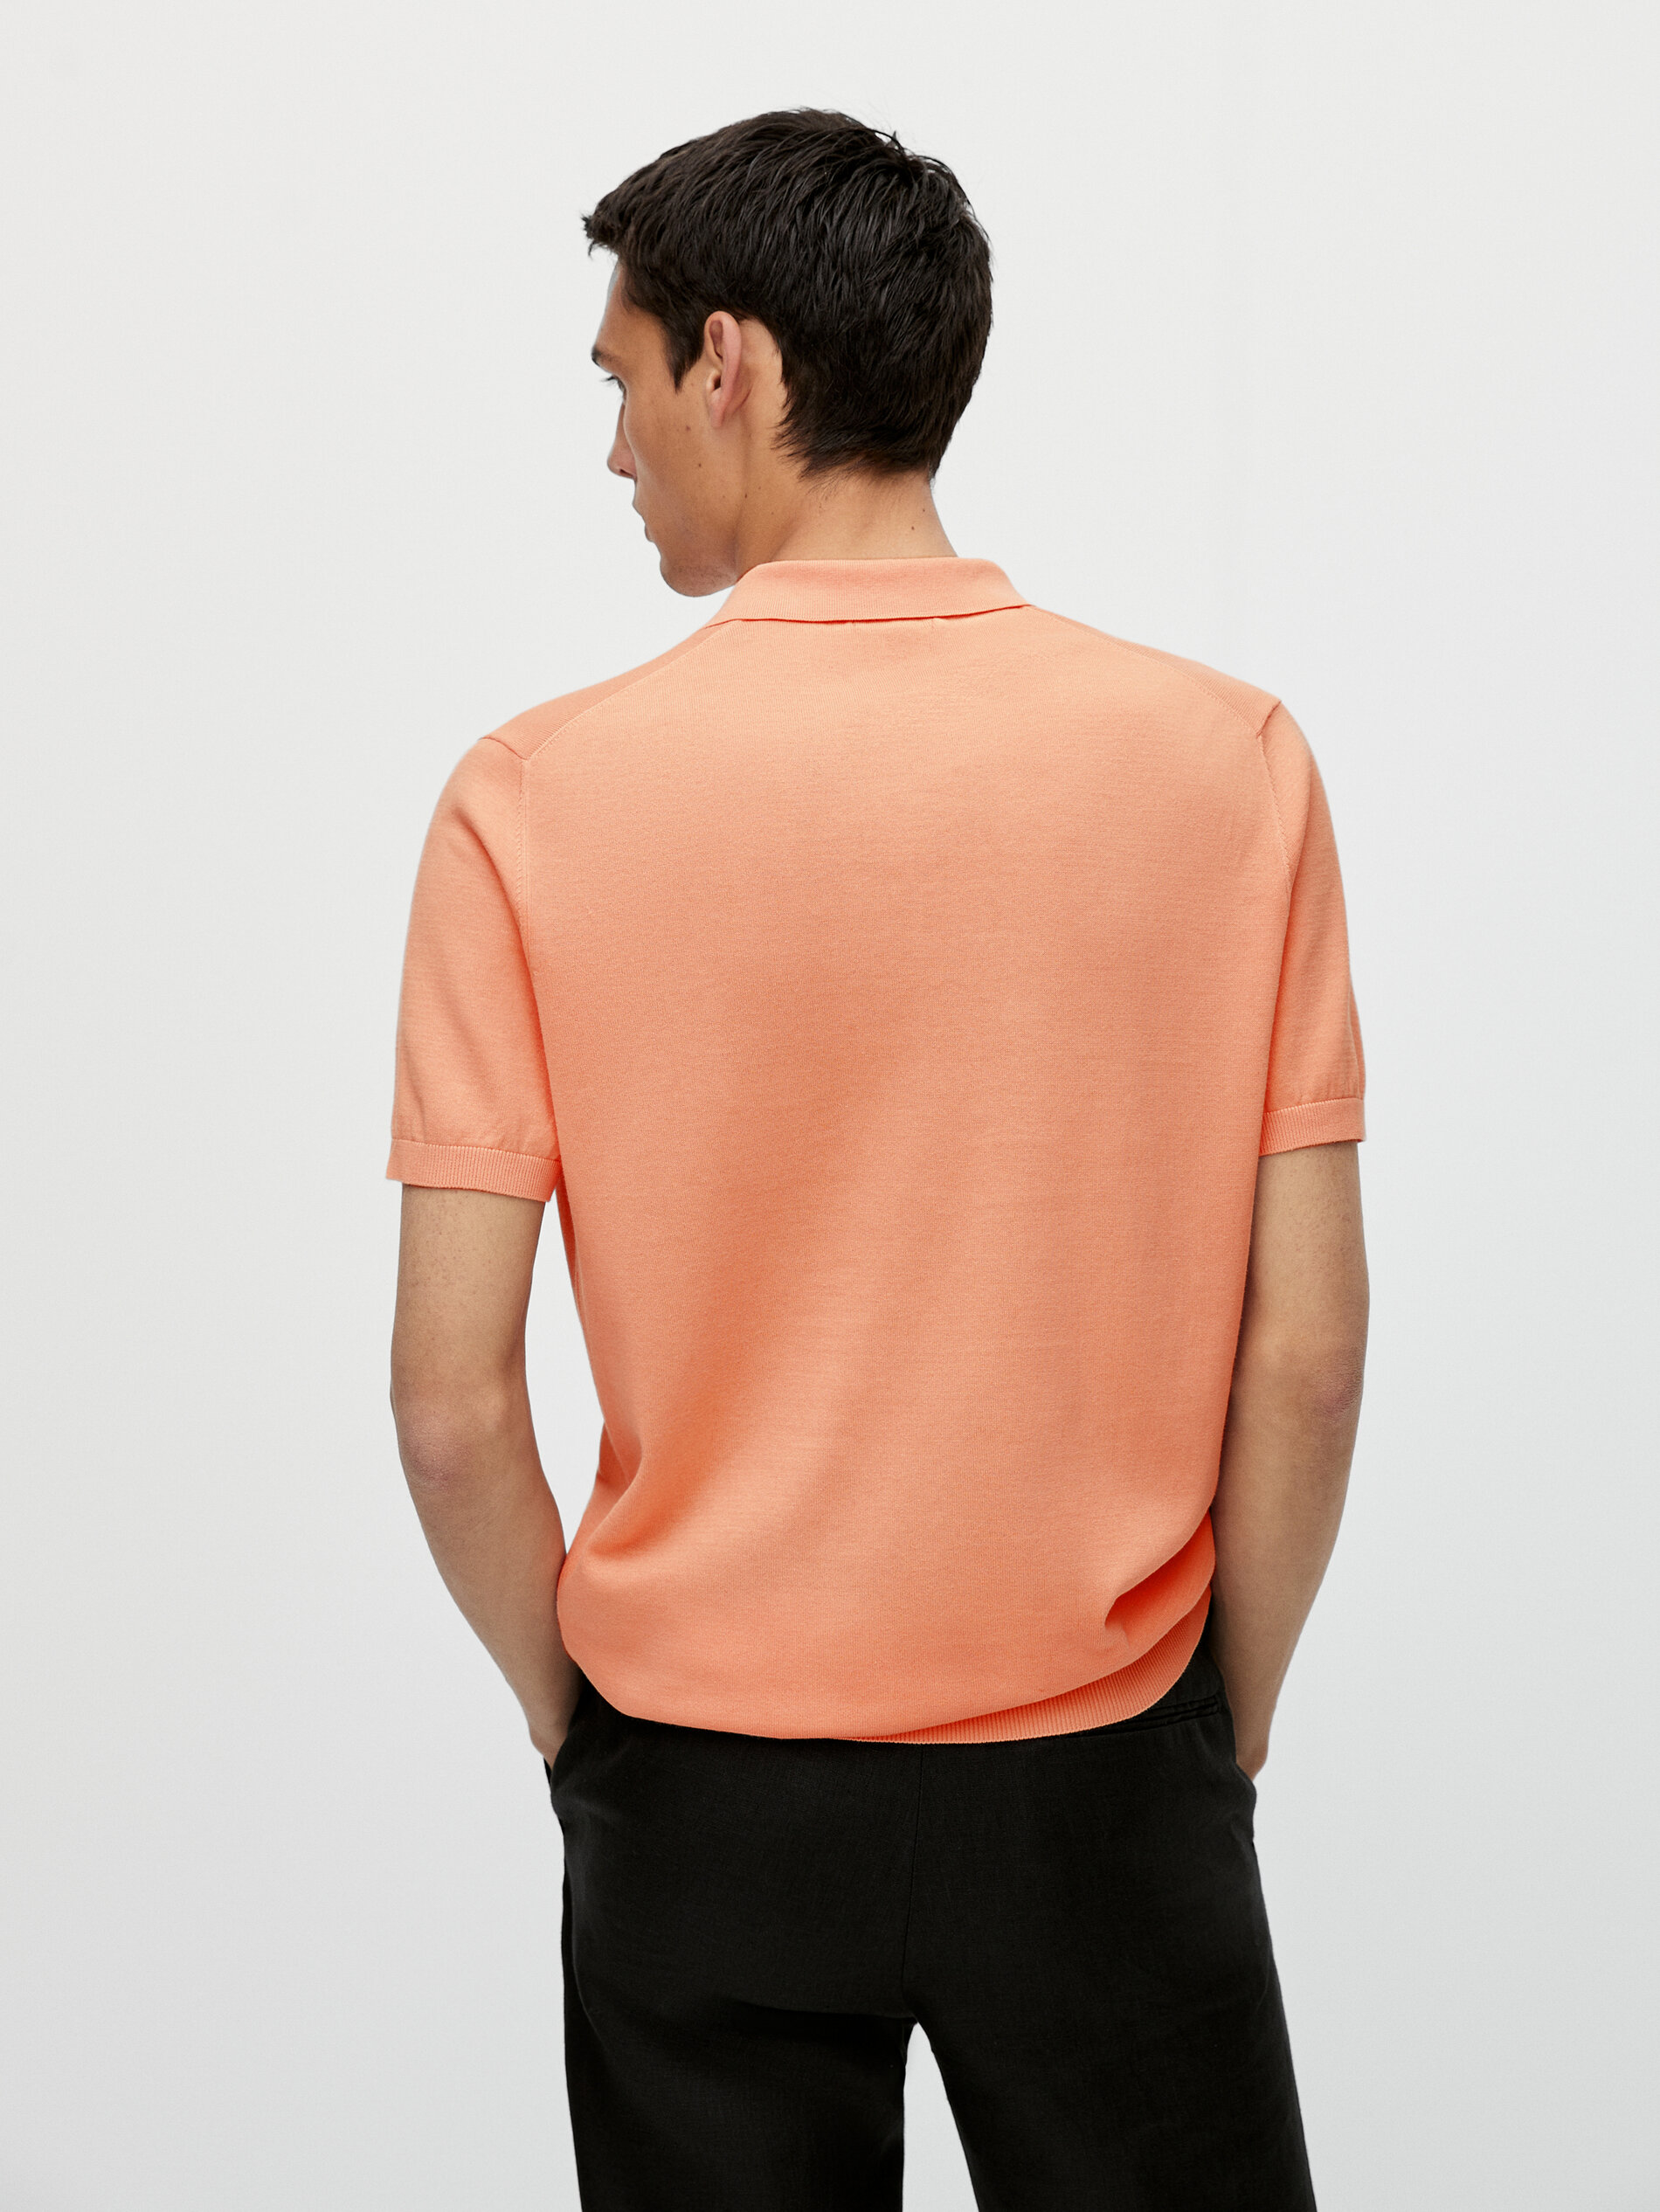 Short sleeve cotton polo sweater - Massimo Dutti Slovenia